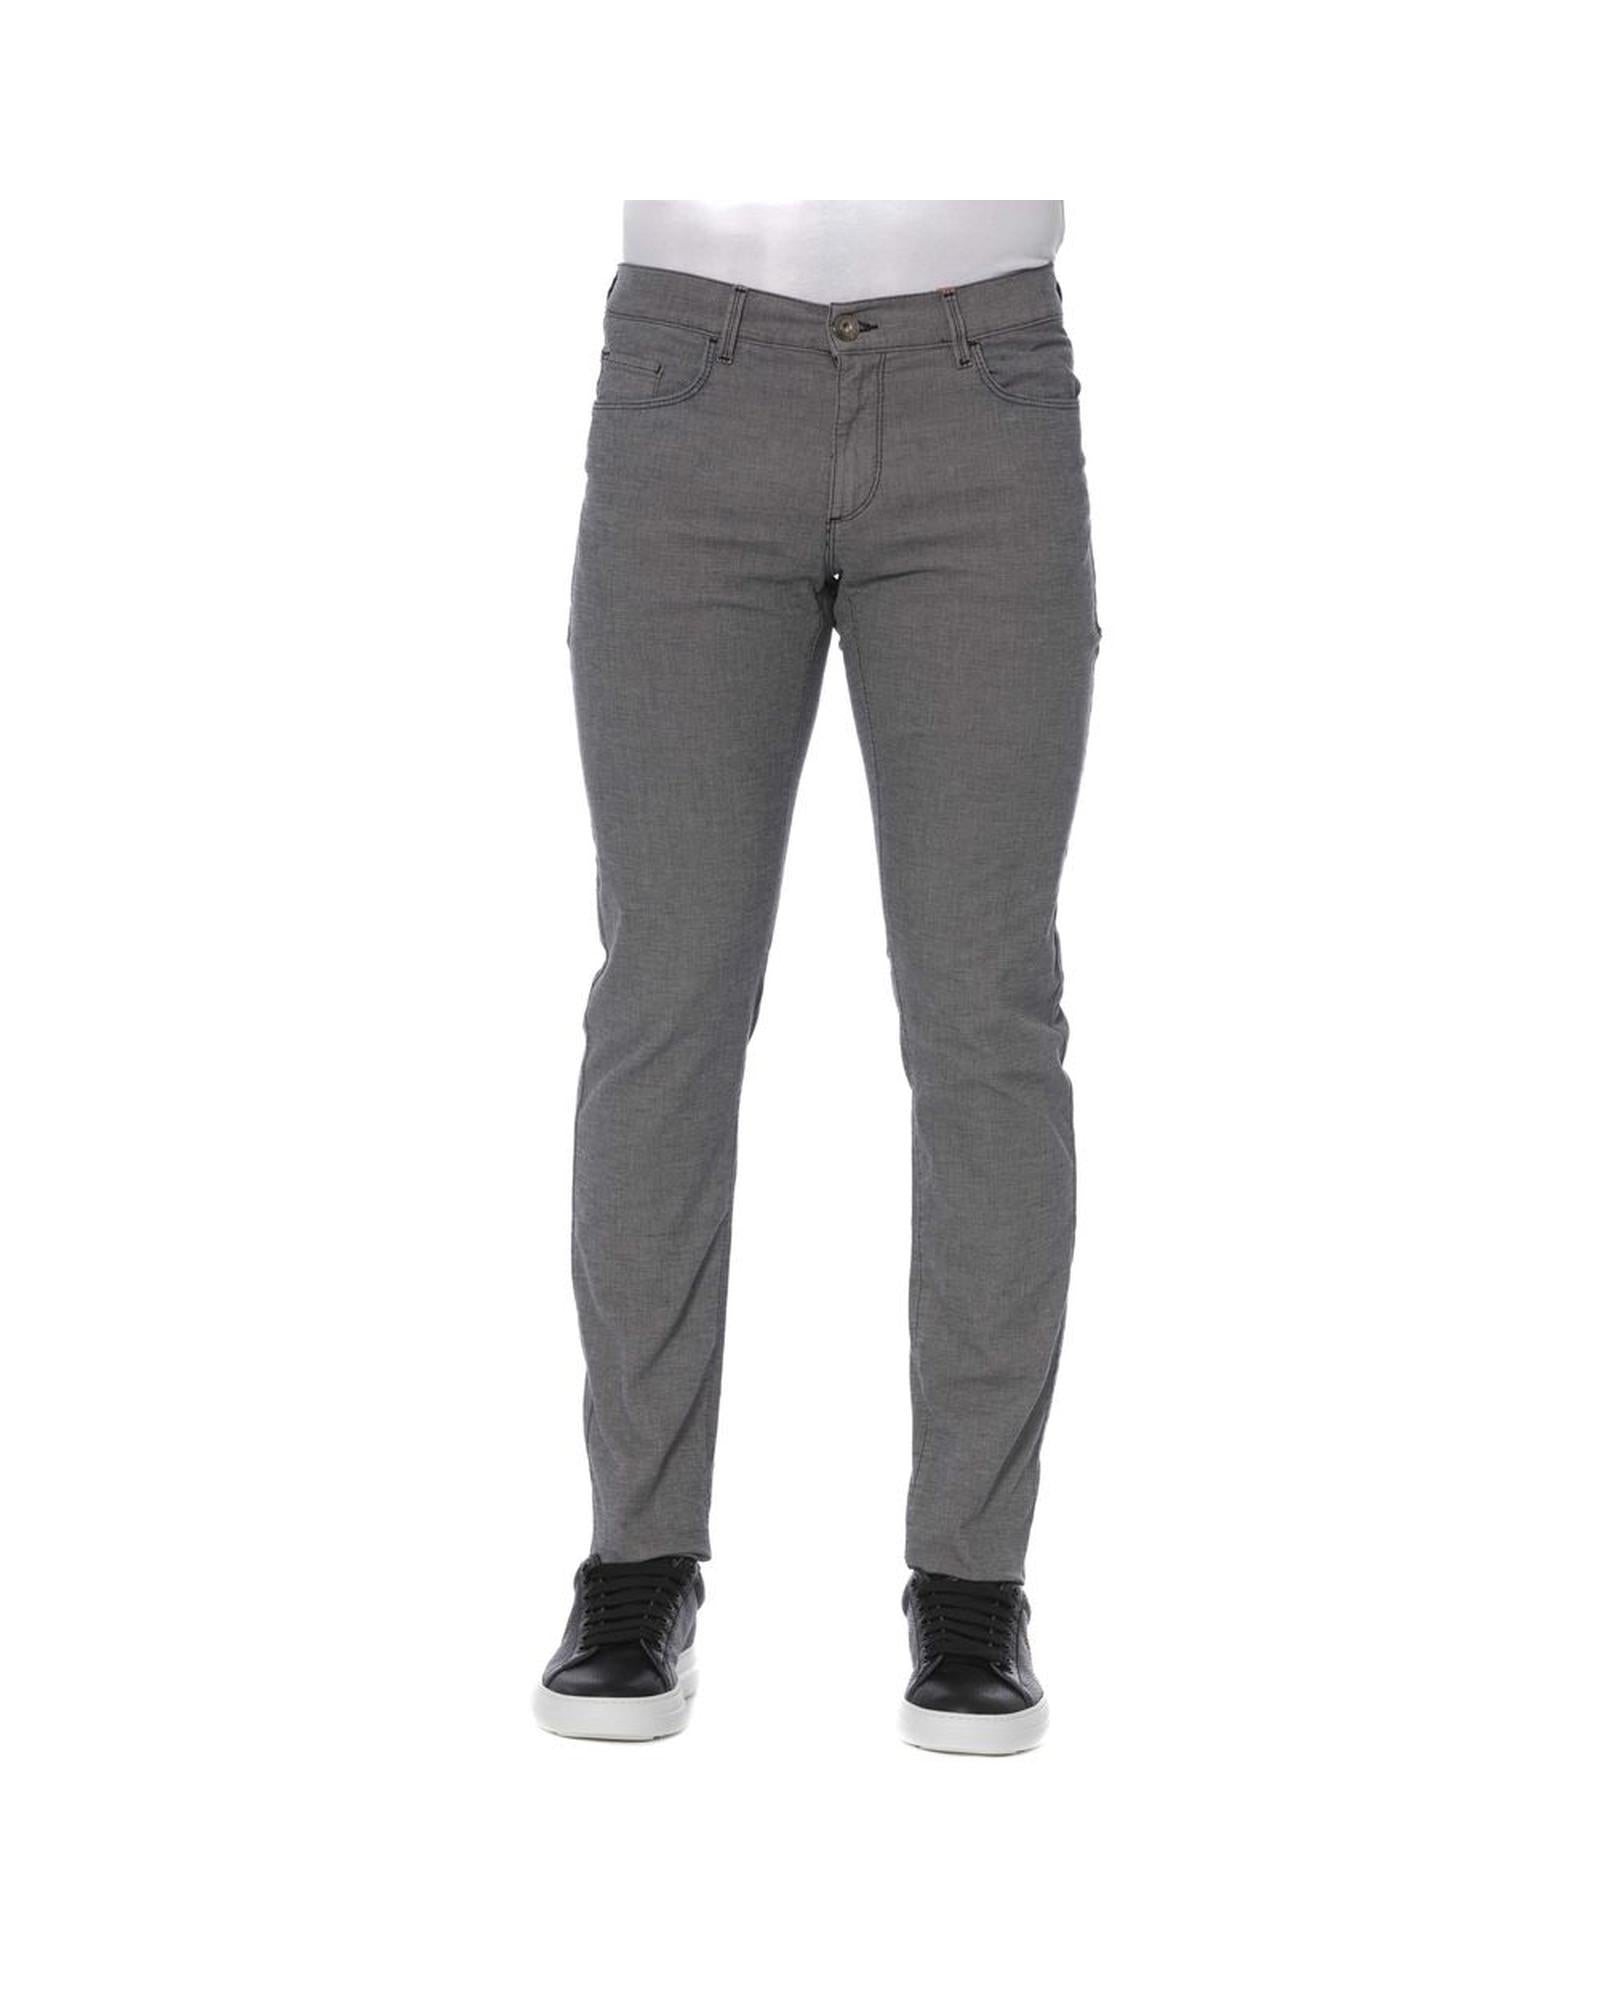 Men's Gray Cotton Jeans & Pant - W30 US